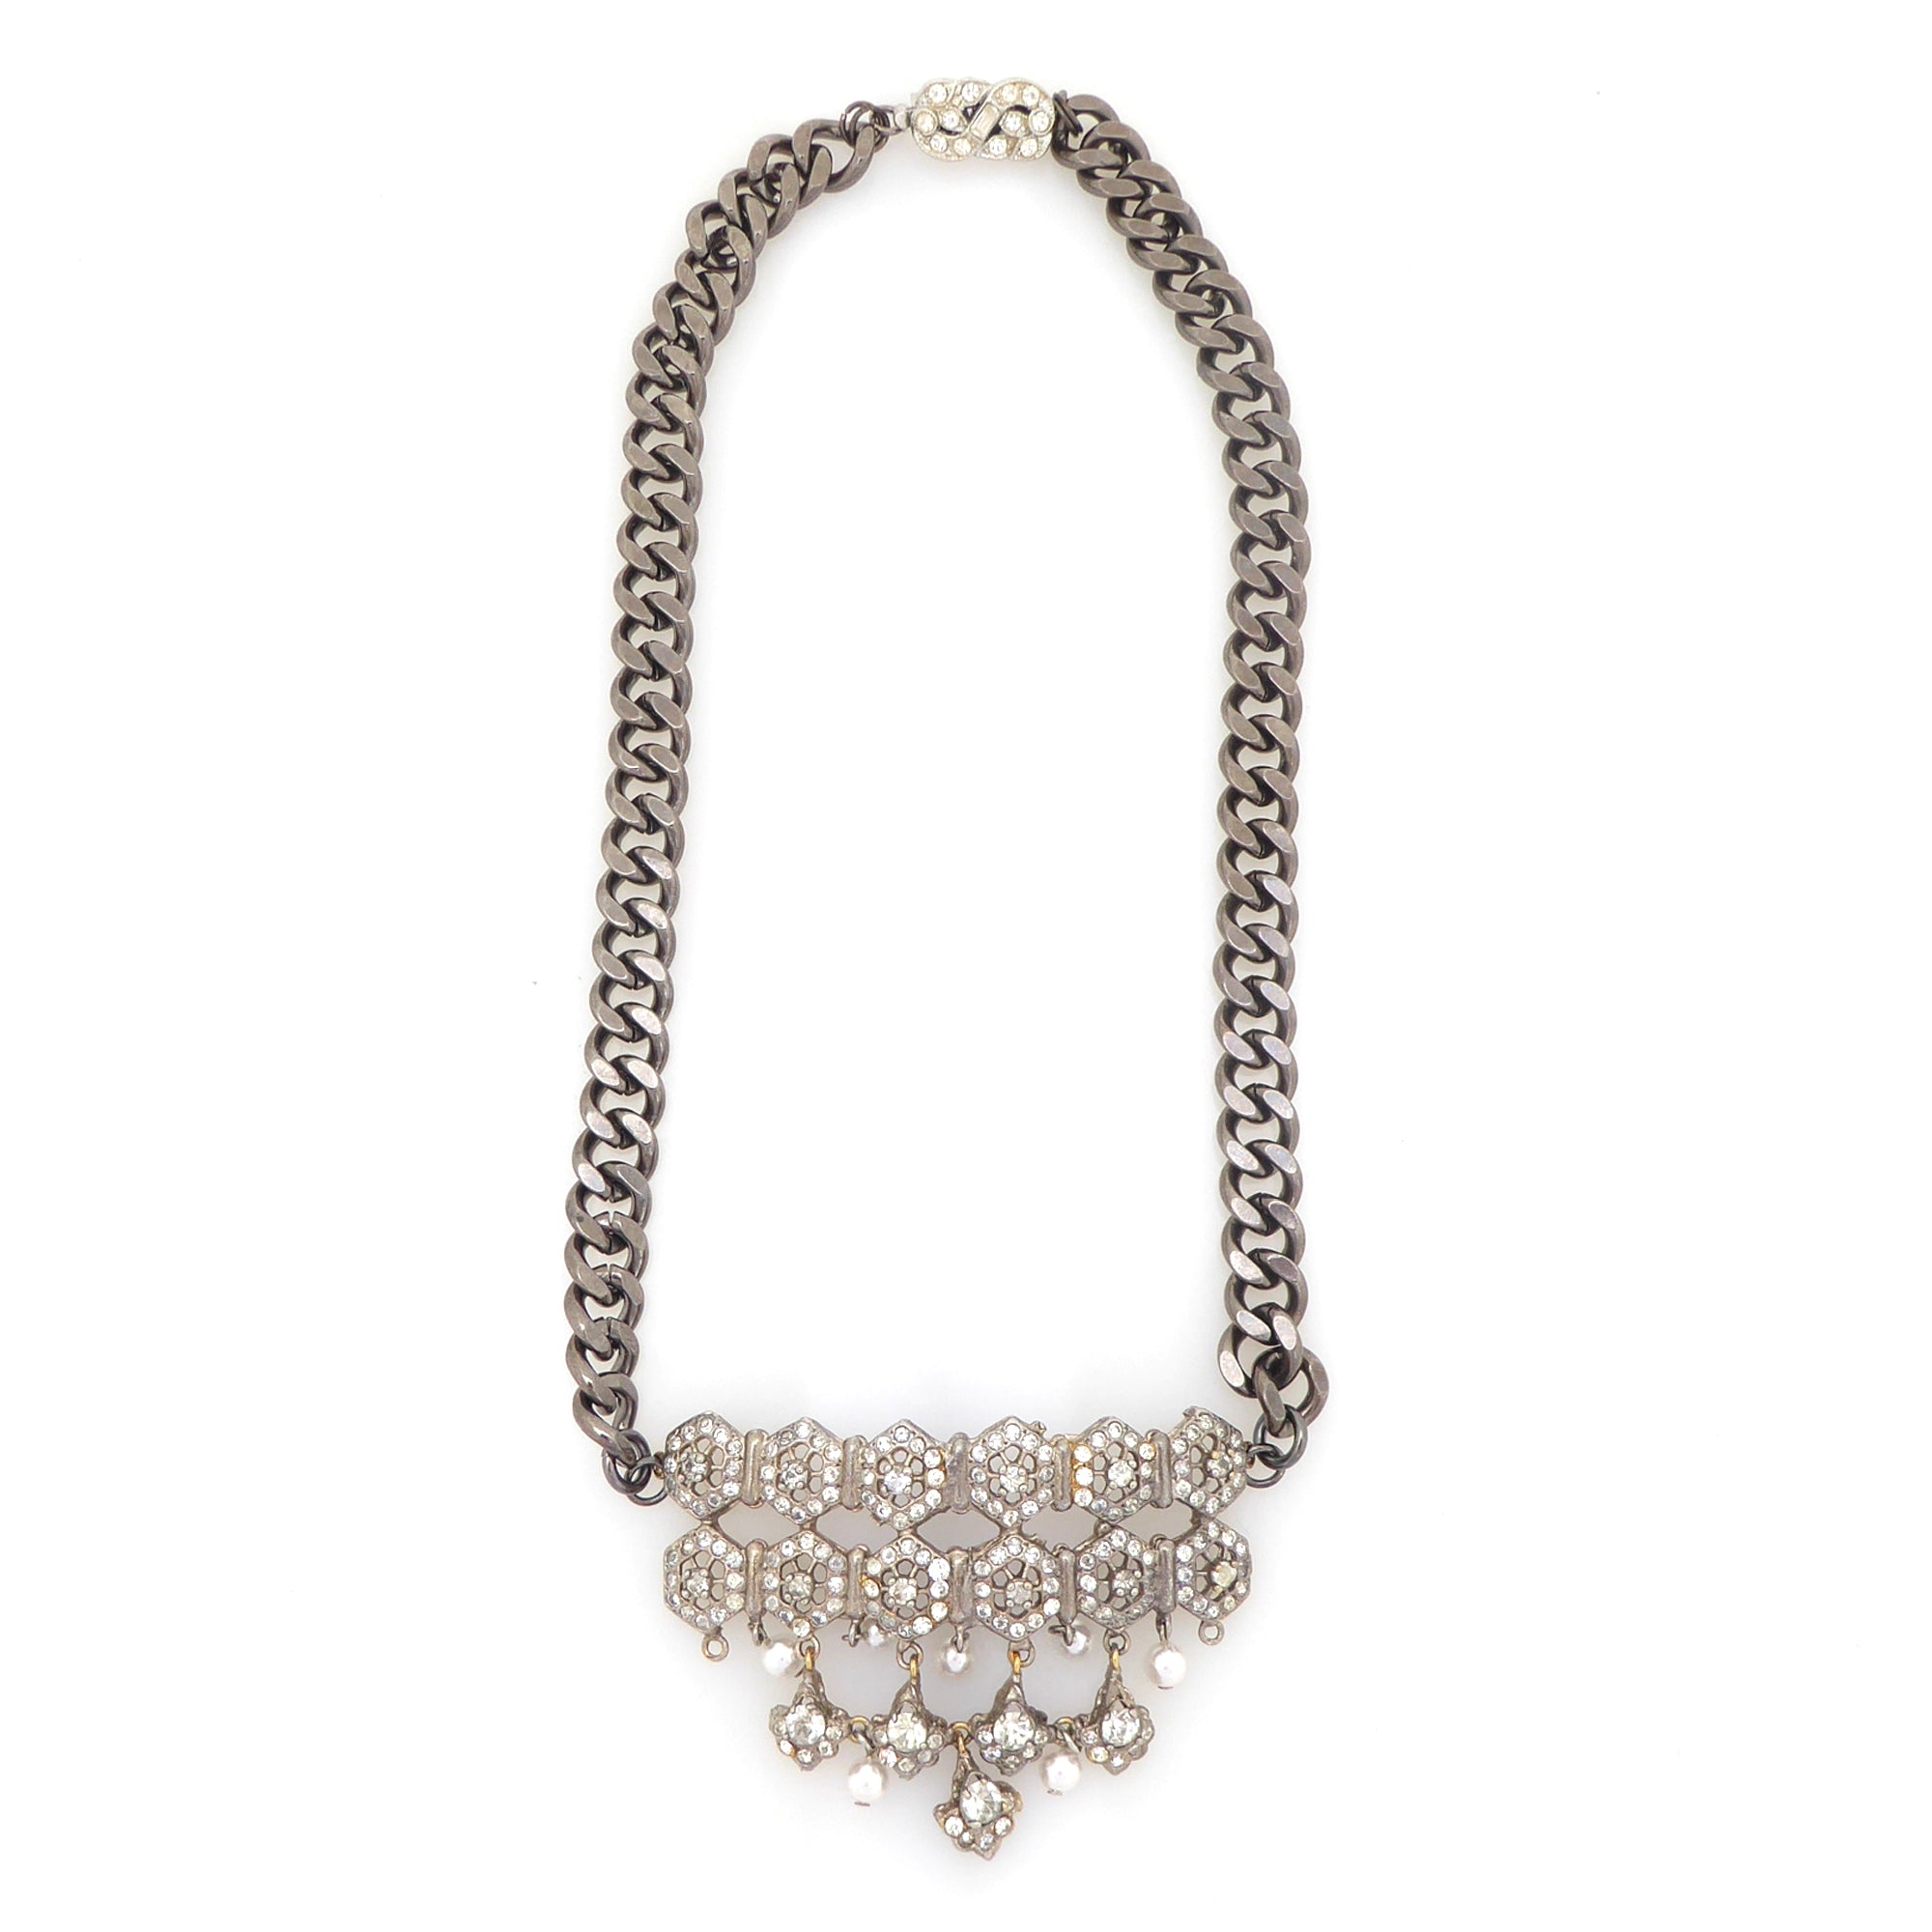 Tiretiera rhinestone pearl gunmetal necklace by Jenny Dayco 5